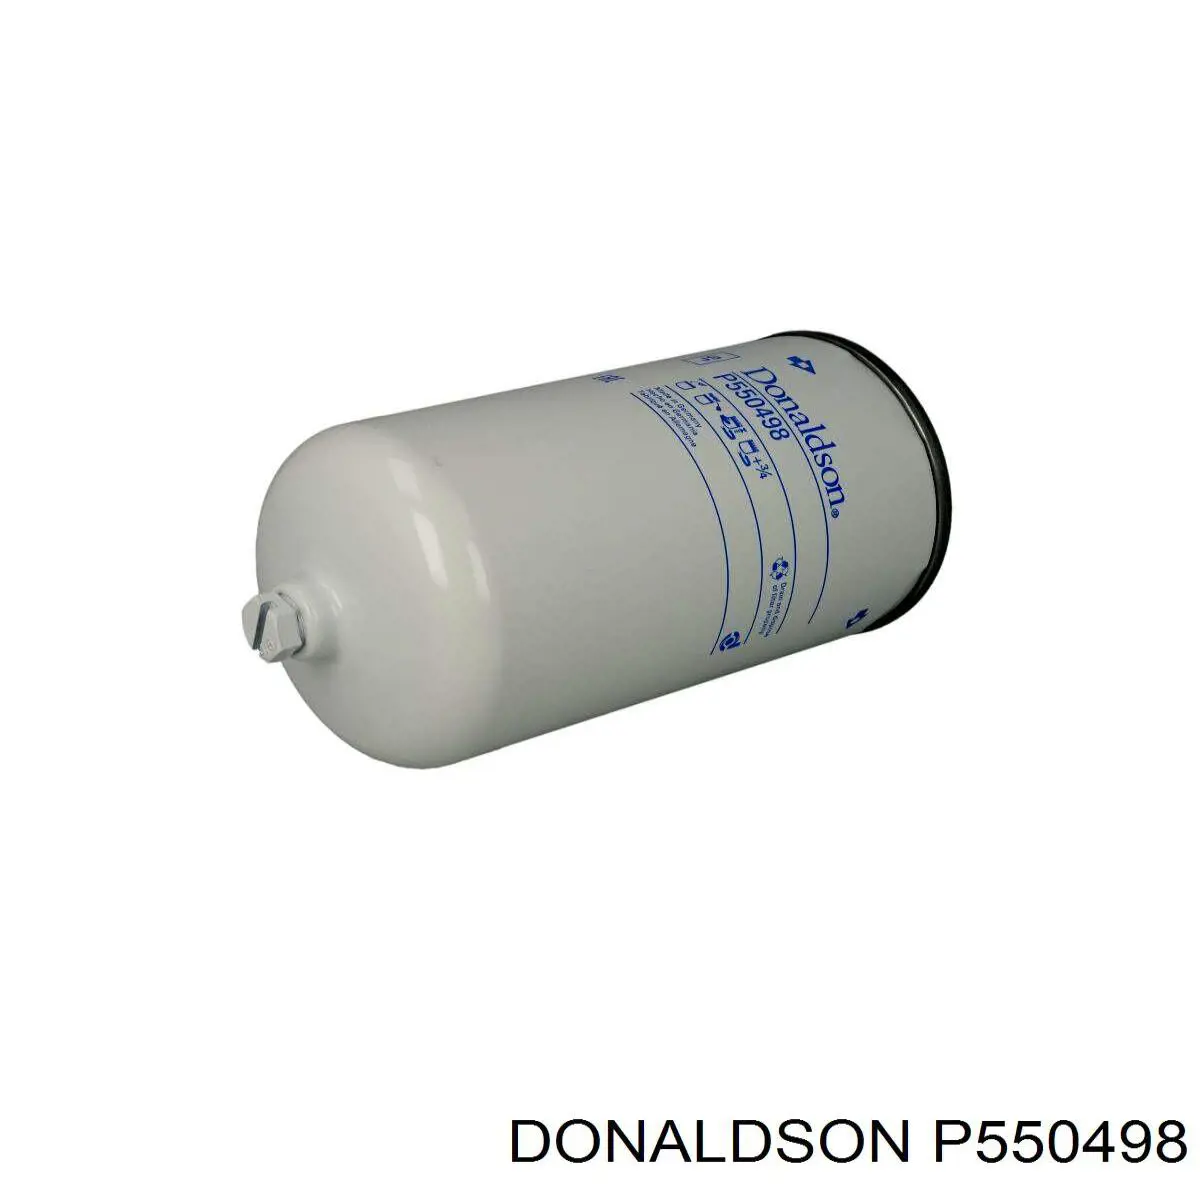 P550498 Donaldson filtro de combustible